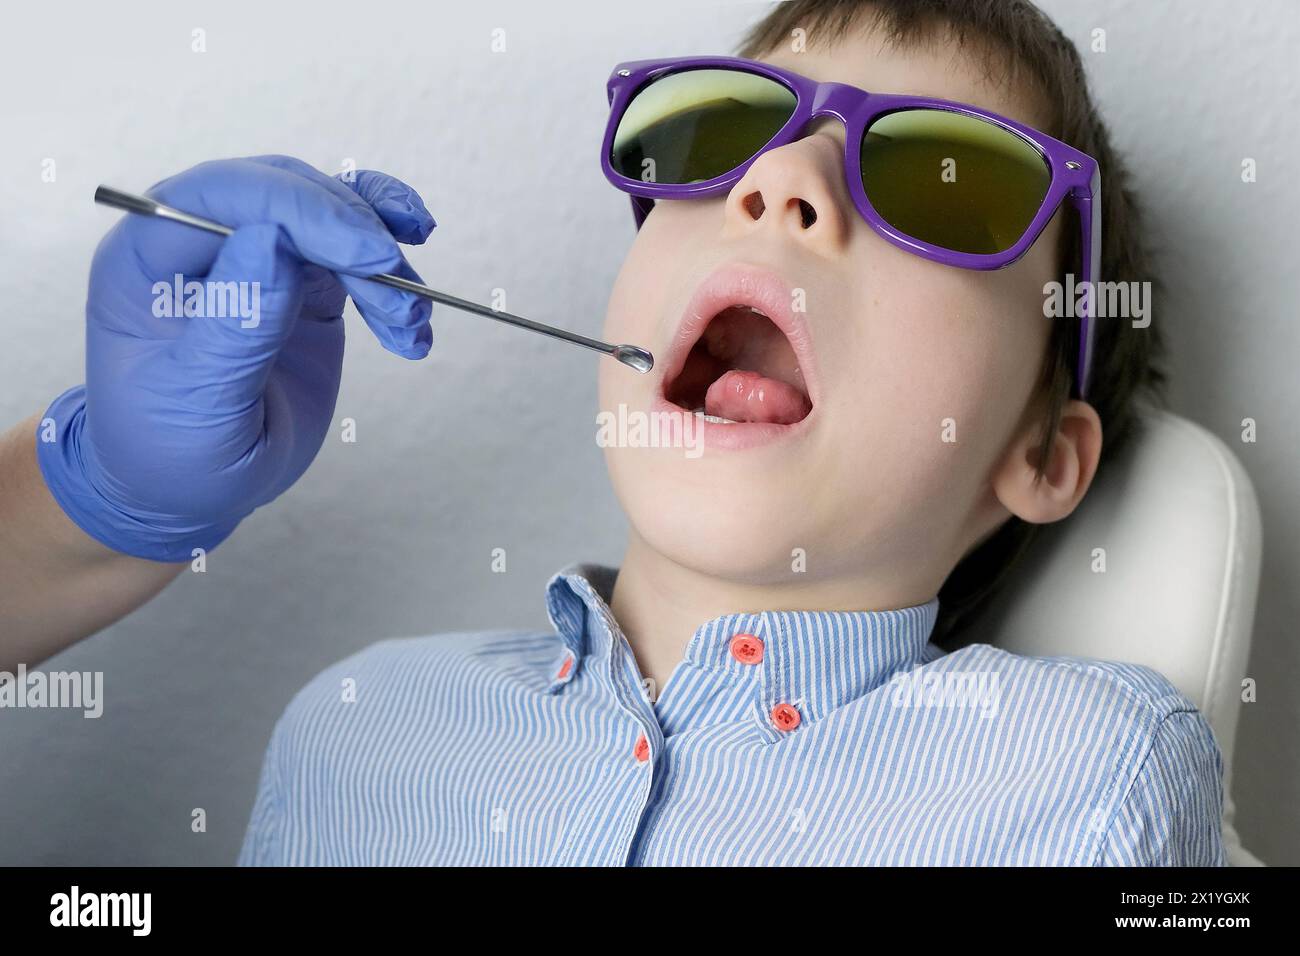 Zahnarzt, Arzt untersucht die Mundhöhle eines kleinen Patienten, Backenzähne wachsen, Junge, Kind mit offenem Mund, Nahaufnahme der Zähne des Kindes Stockfoto